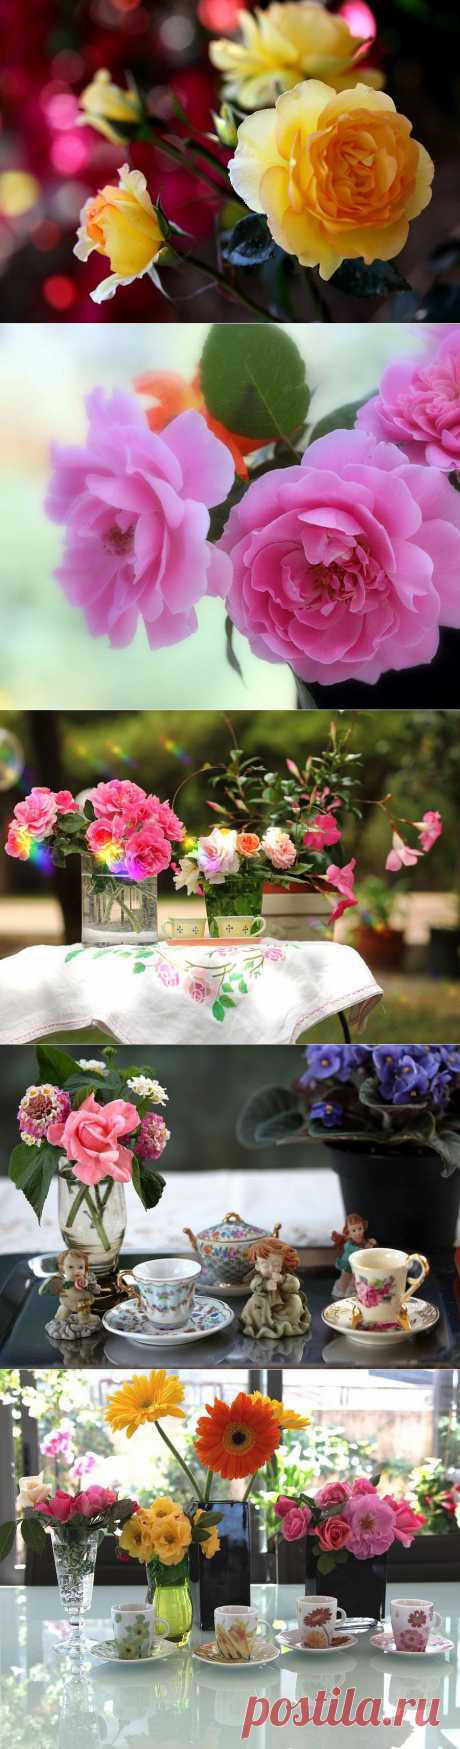 Красивые цветы в вазах и корзинах